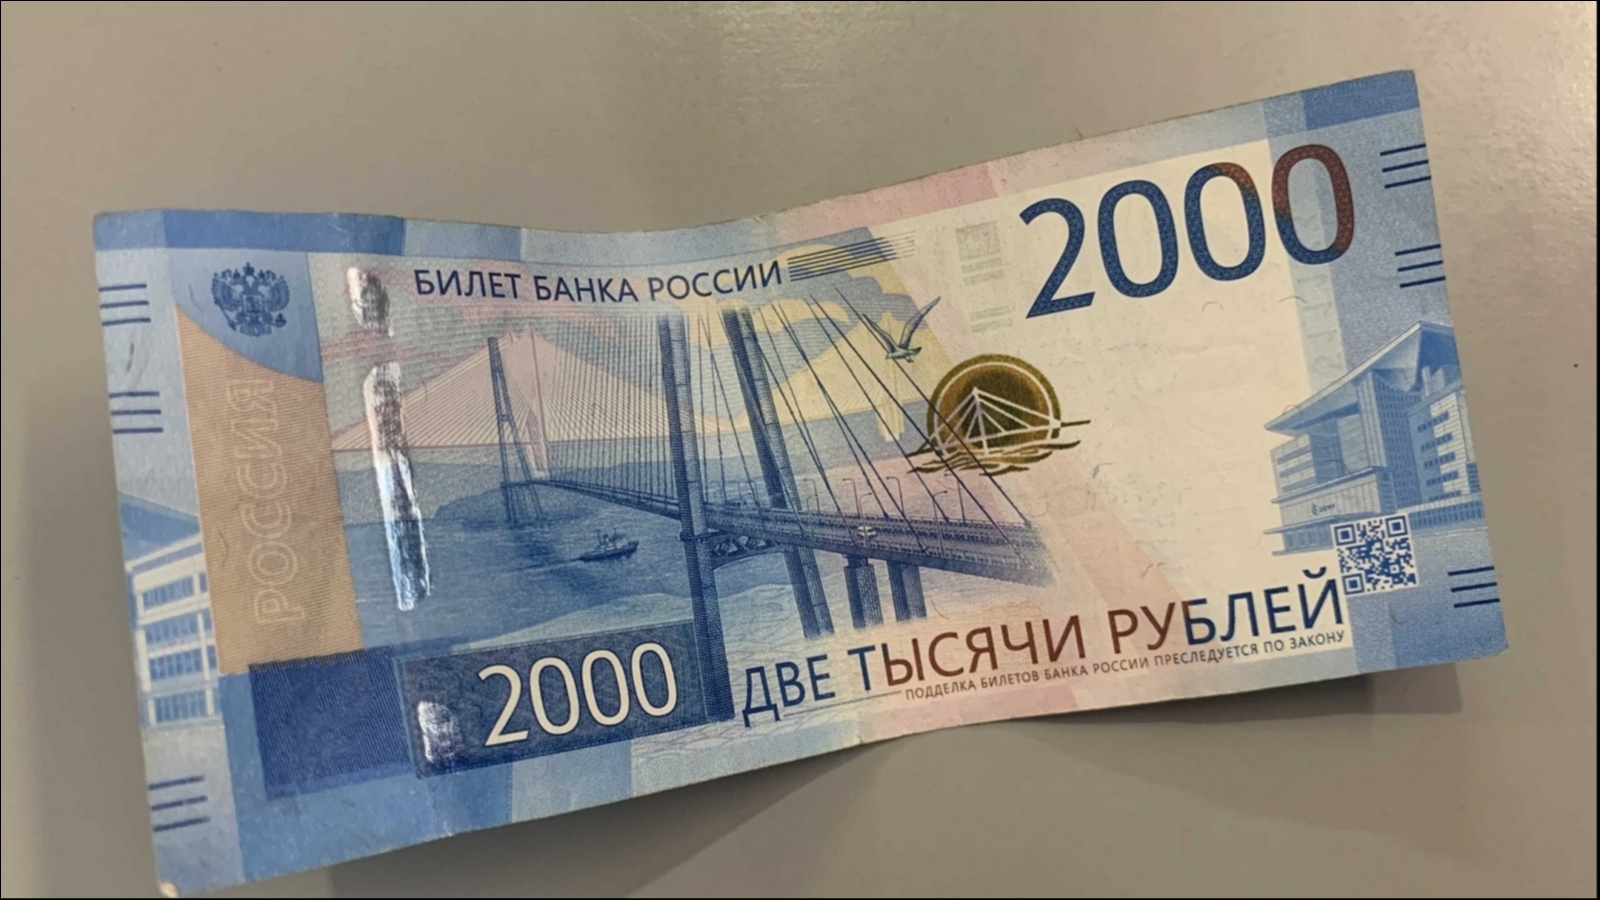 200 рублей новая купюра фото